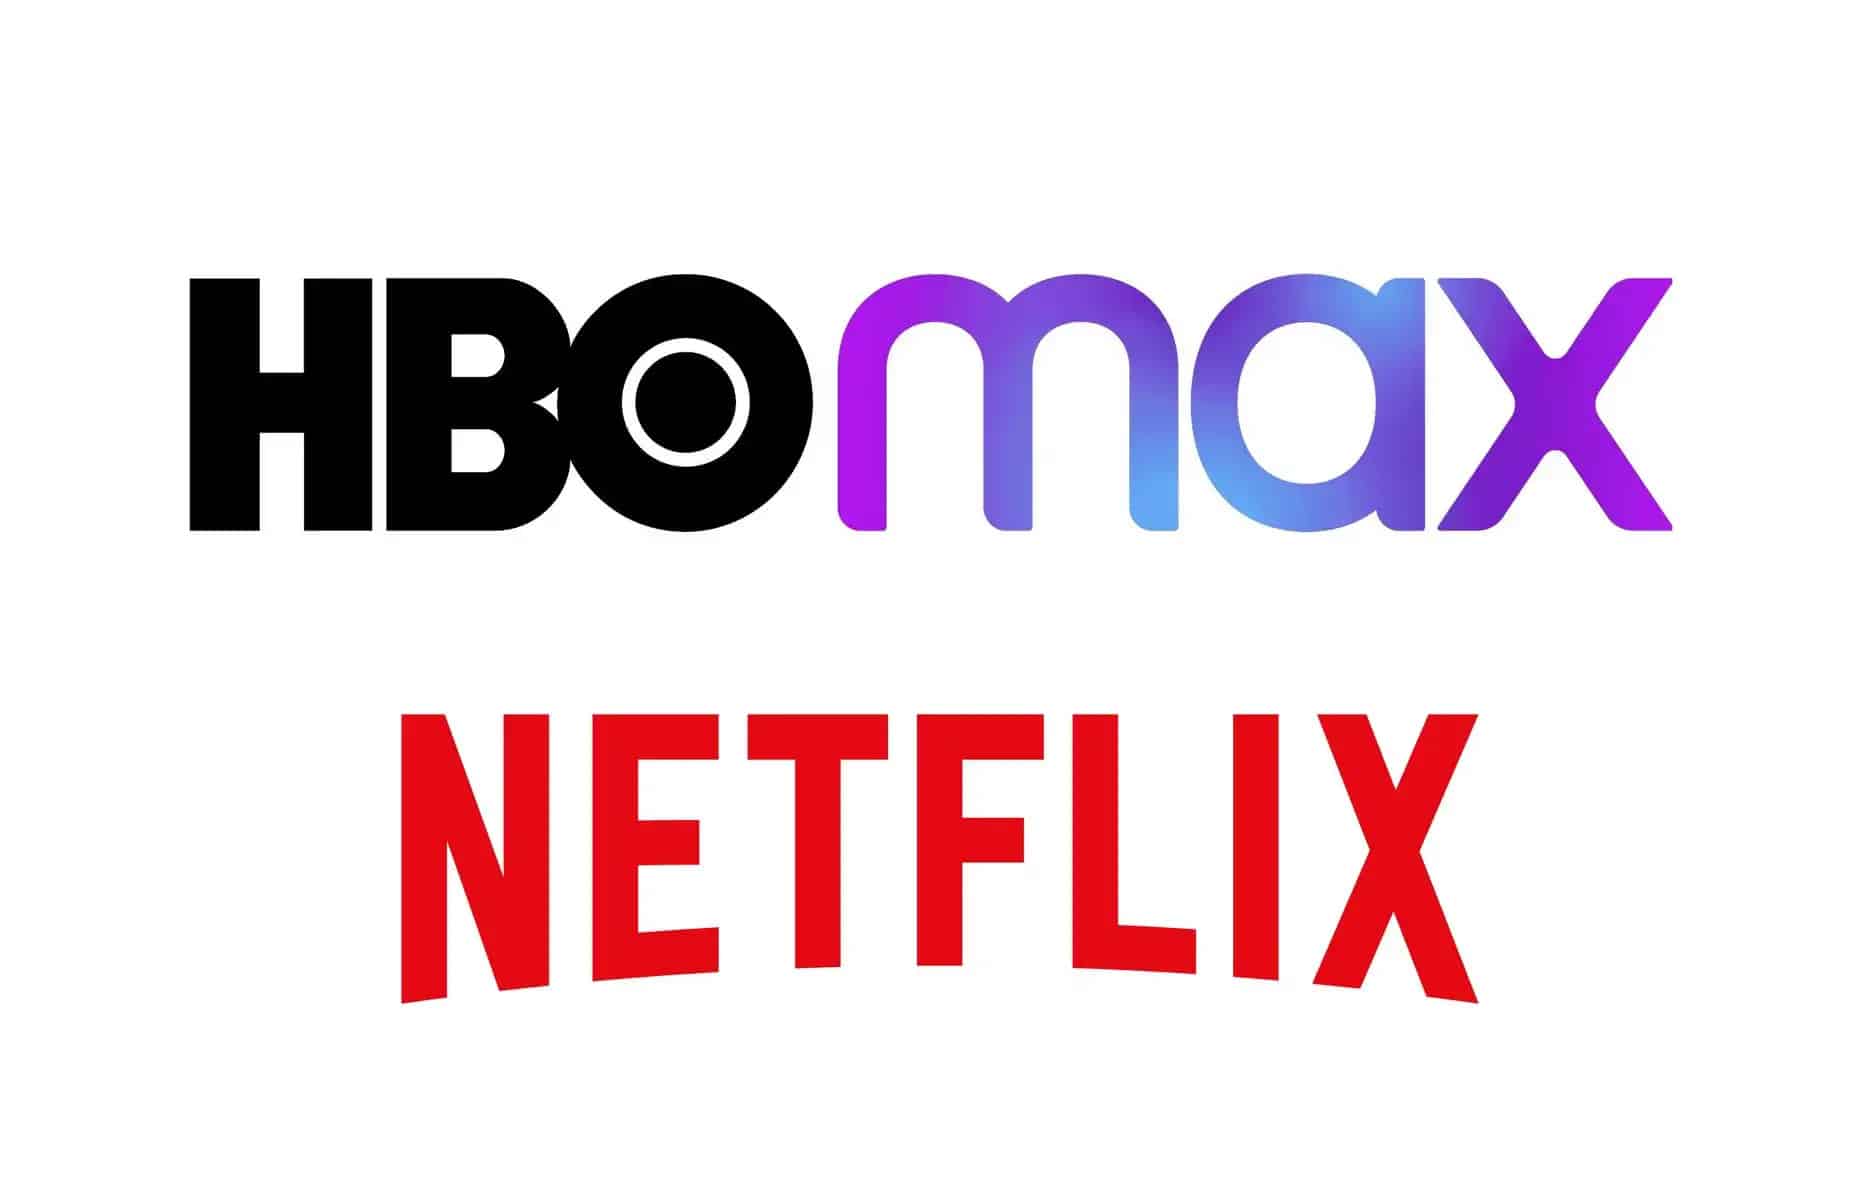 HBO og Netflix forhandler om samarbeid - 730.no